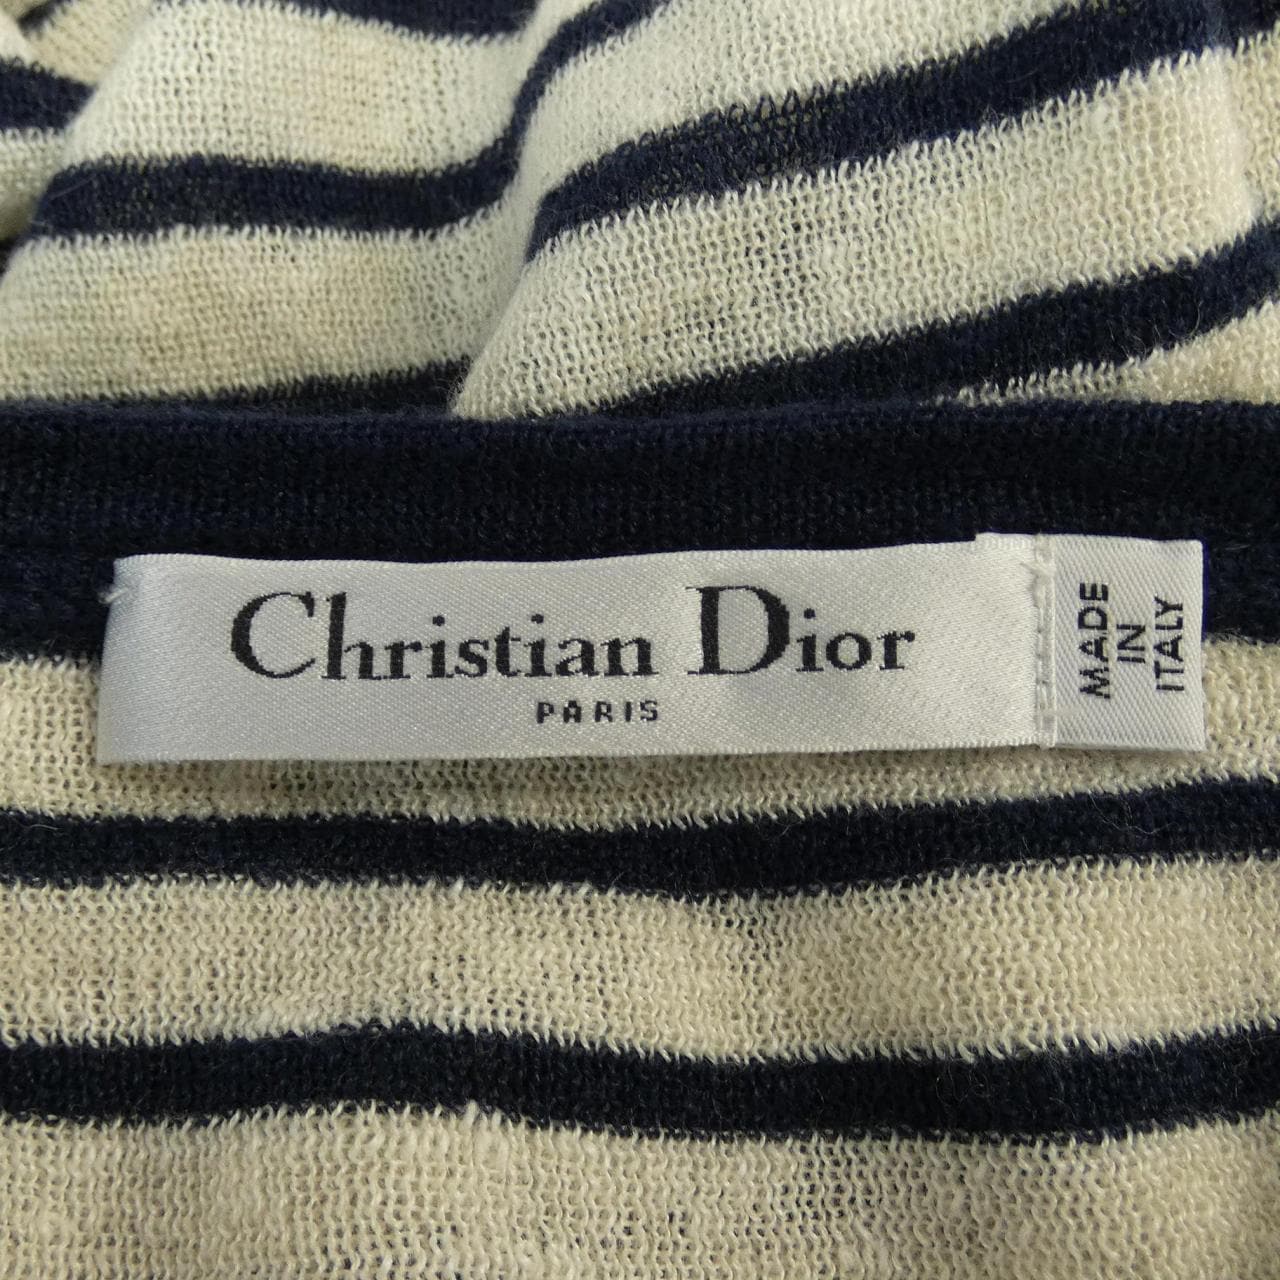 Vintage Christian Dior チュニック レーヨン ニットSirchive